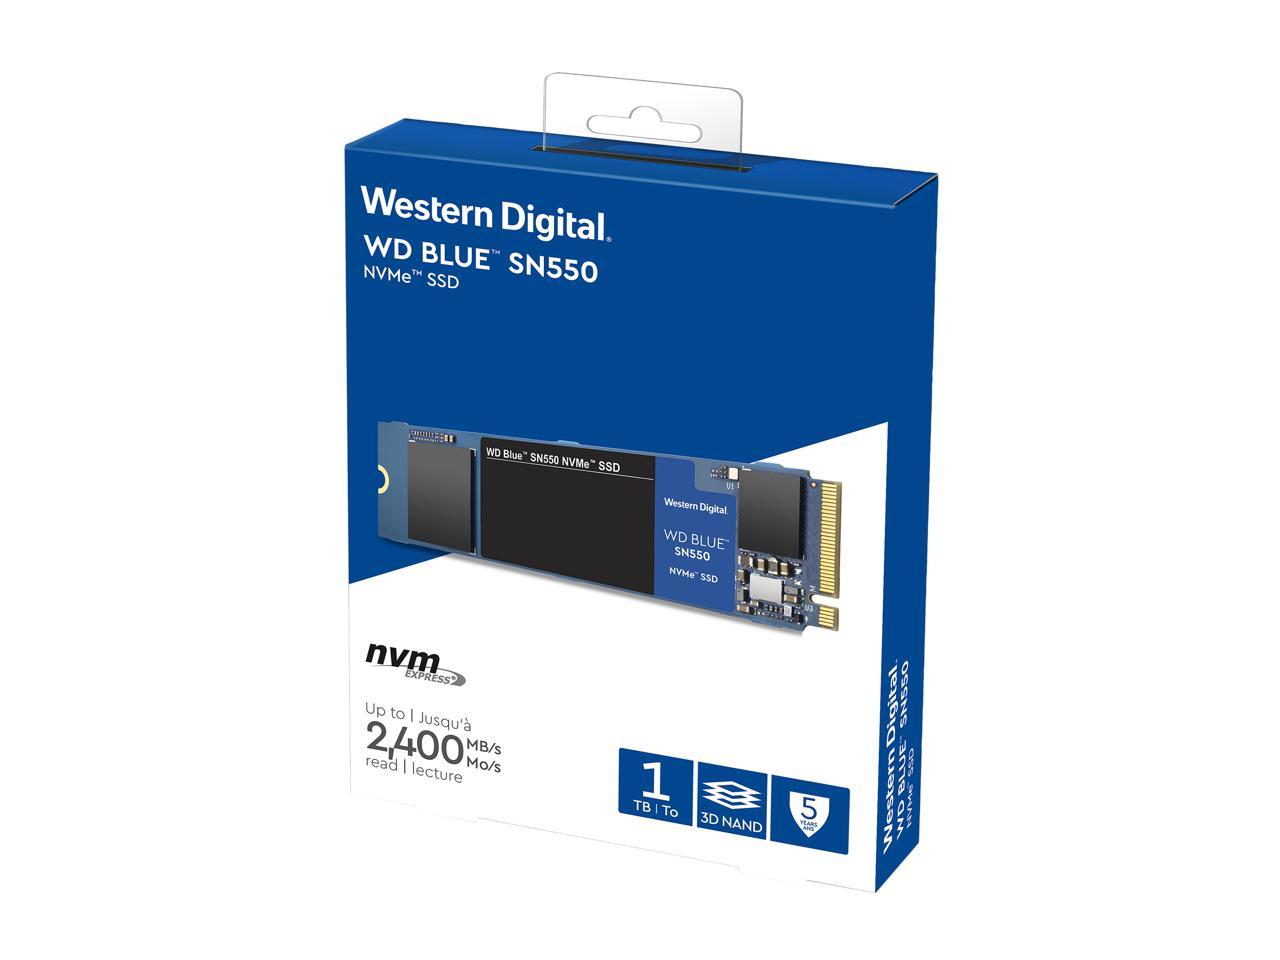 1TB Western Digital WD Blue SN550 NVMe SSD @Newegg $79